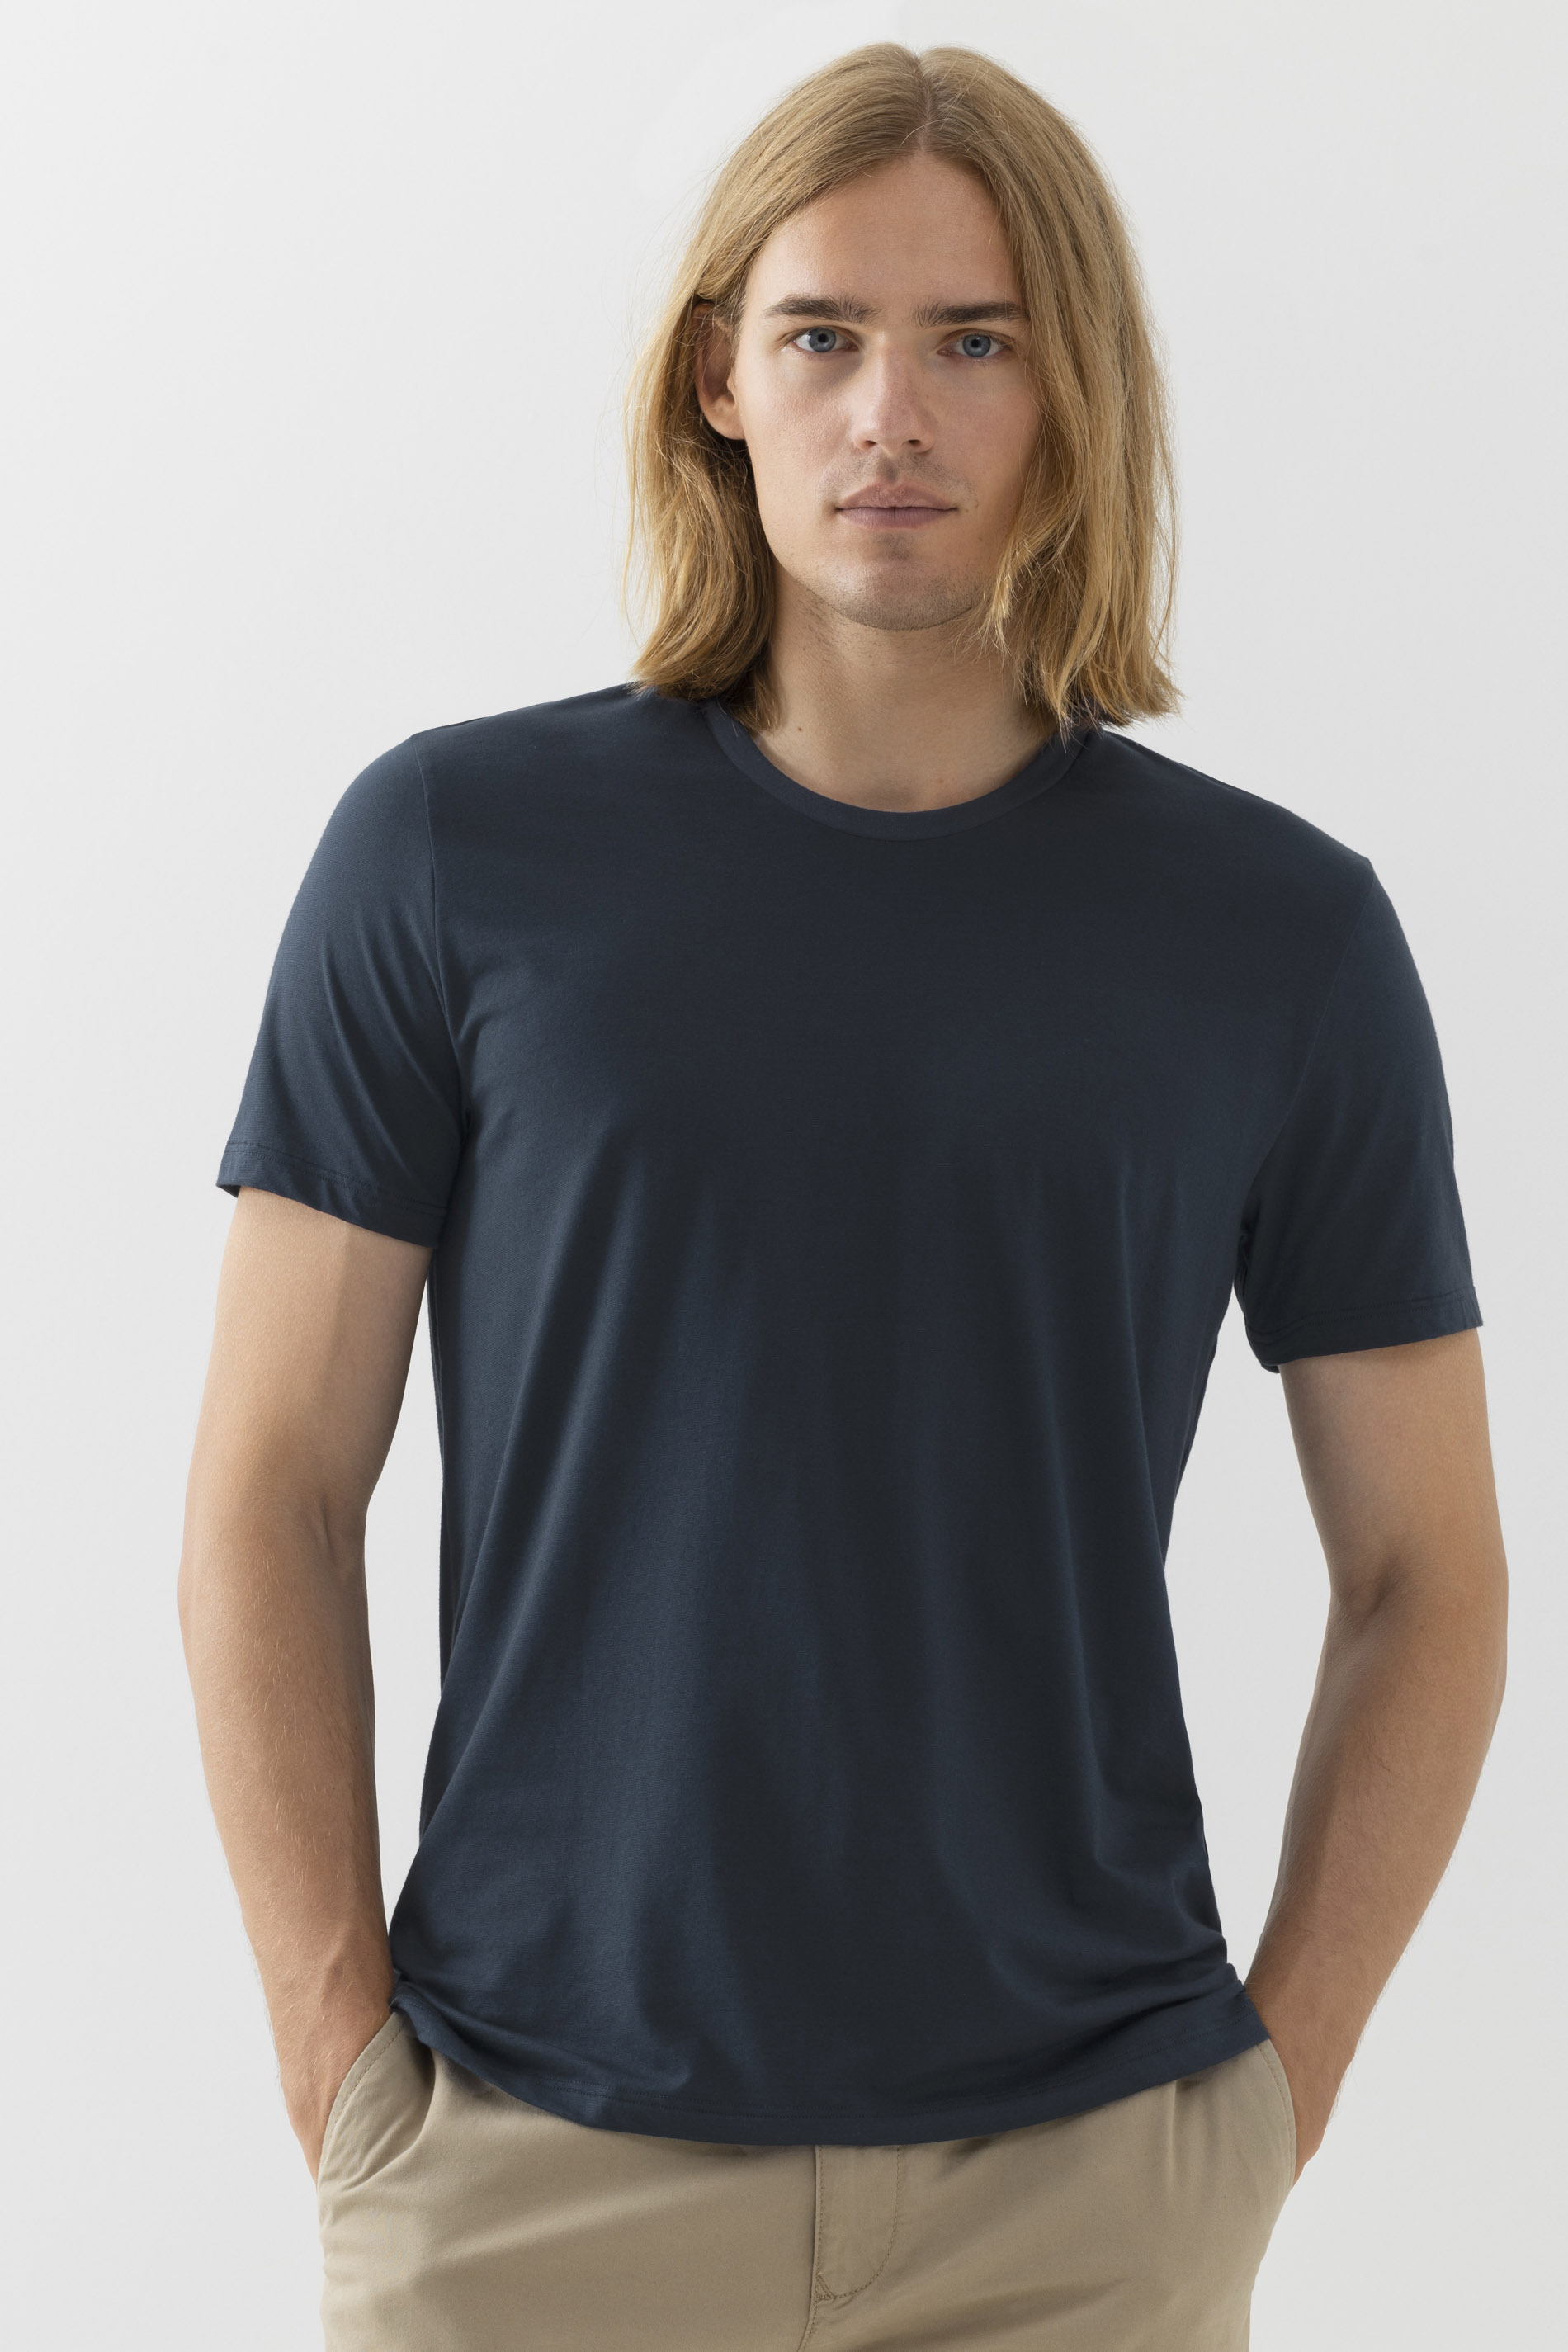 T-shirt Dry Cotton Colour Front View | mey®